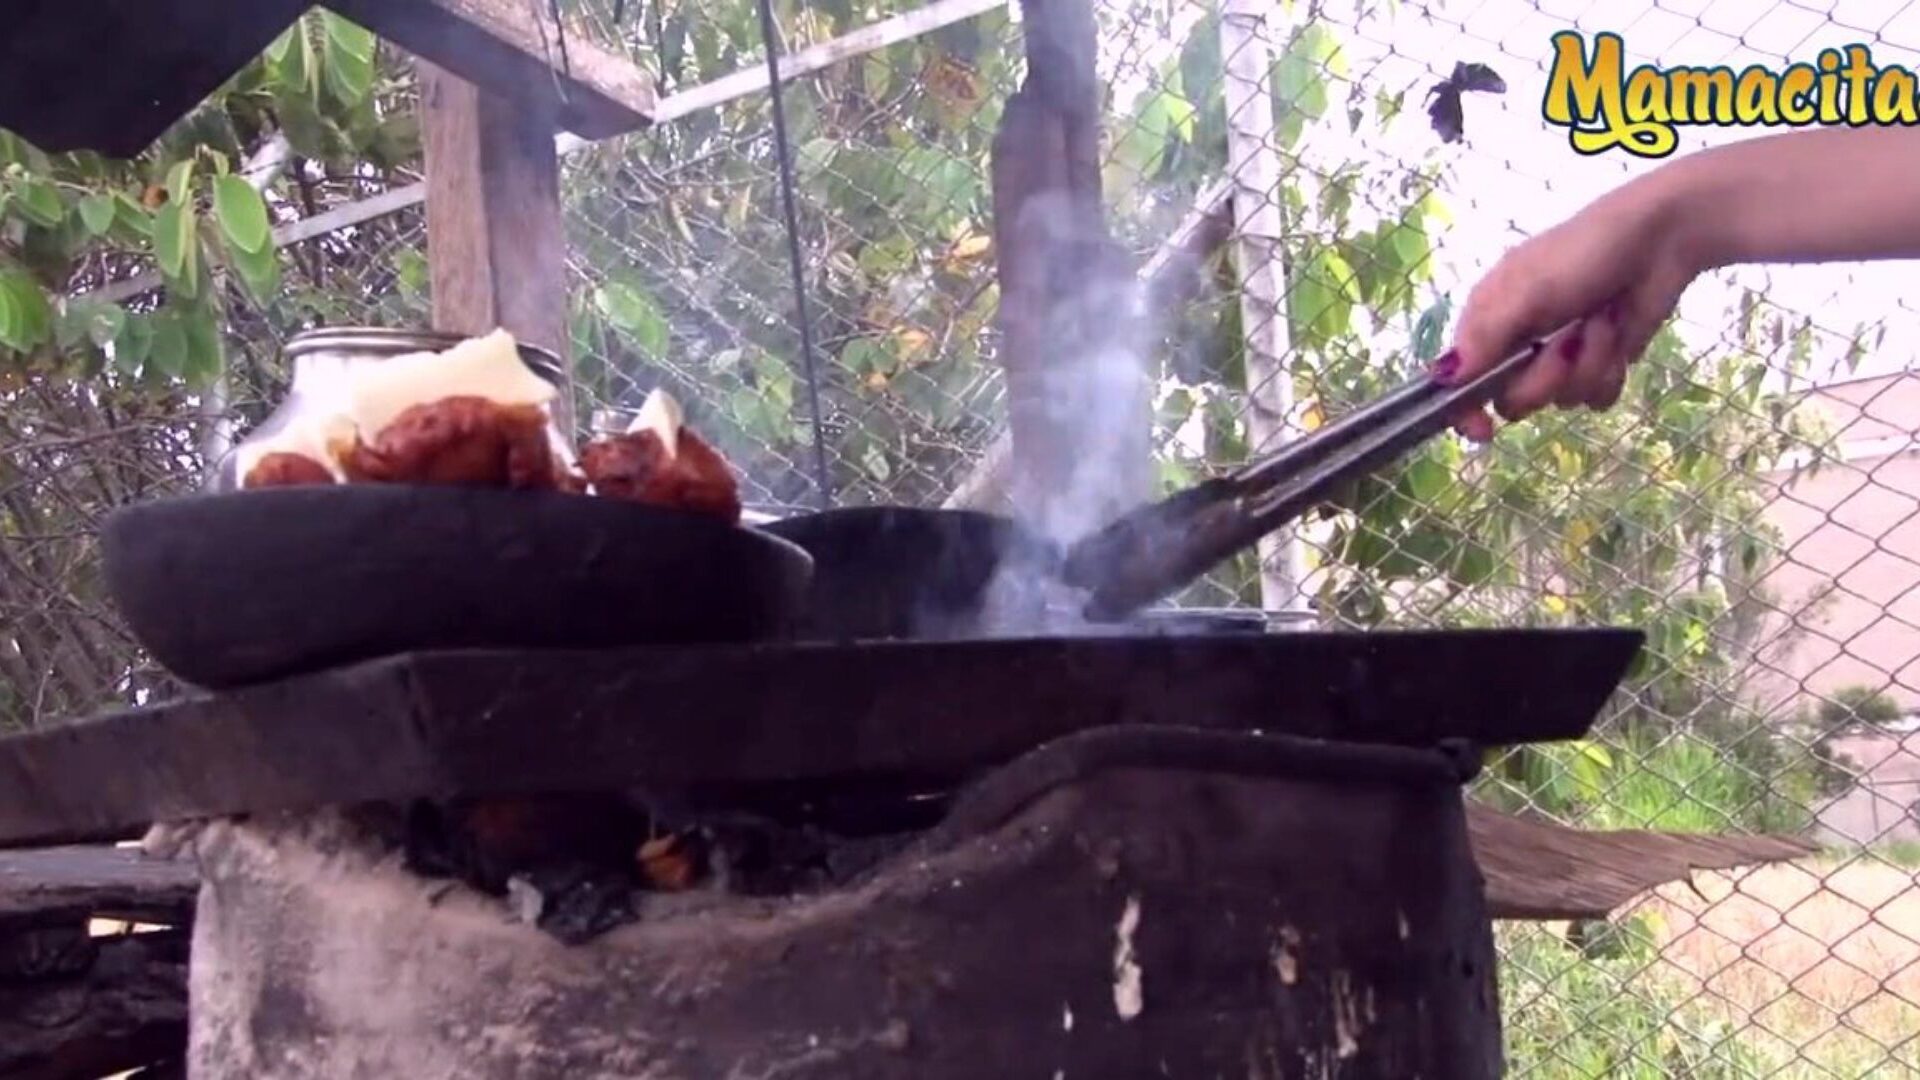 mamacitaz - erittäin kuuma kolumbialainen lihamyyjä kaipaa erityyppistä lihaa